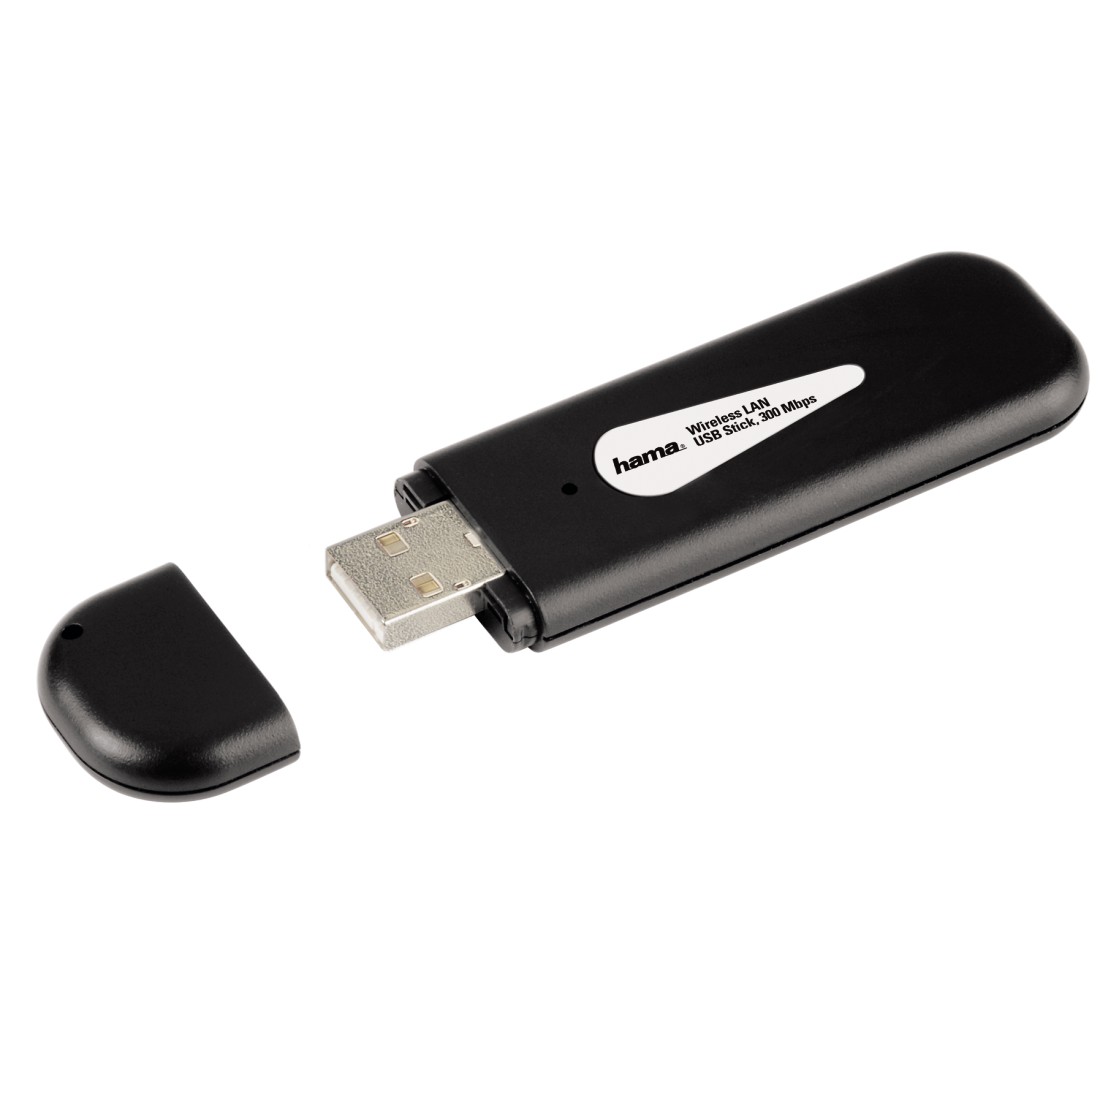 00062740 Hama N300 WLAN USB Stick, 2.4 GHz